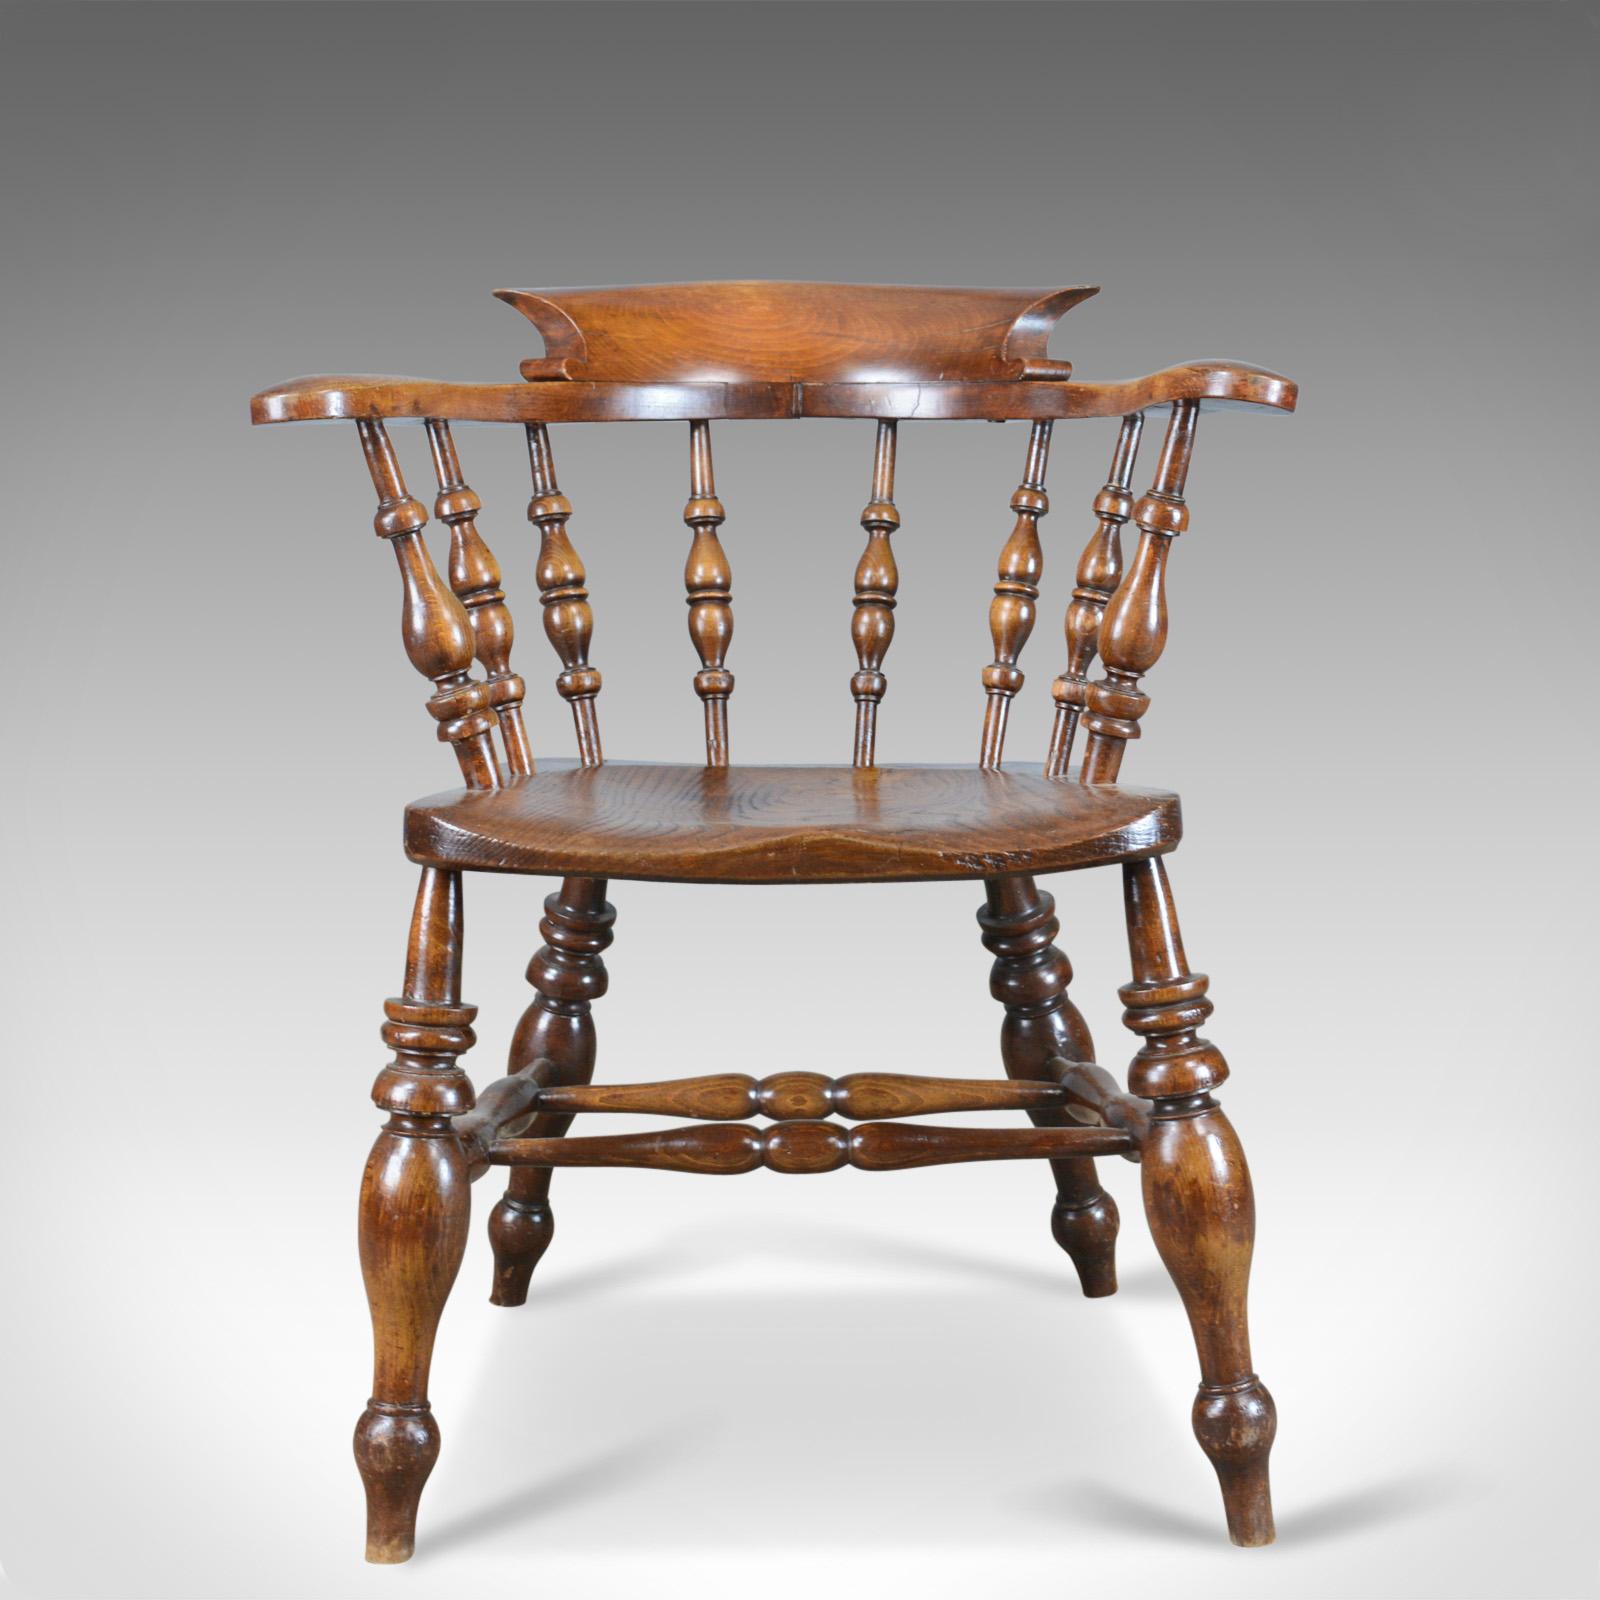 Dies ist ein antiker Stuhl mit gebogener Rückenlehne, der manchmal auch als 